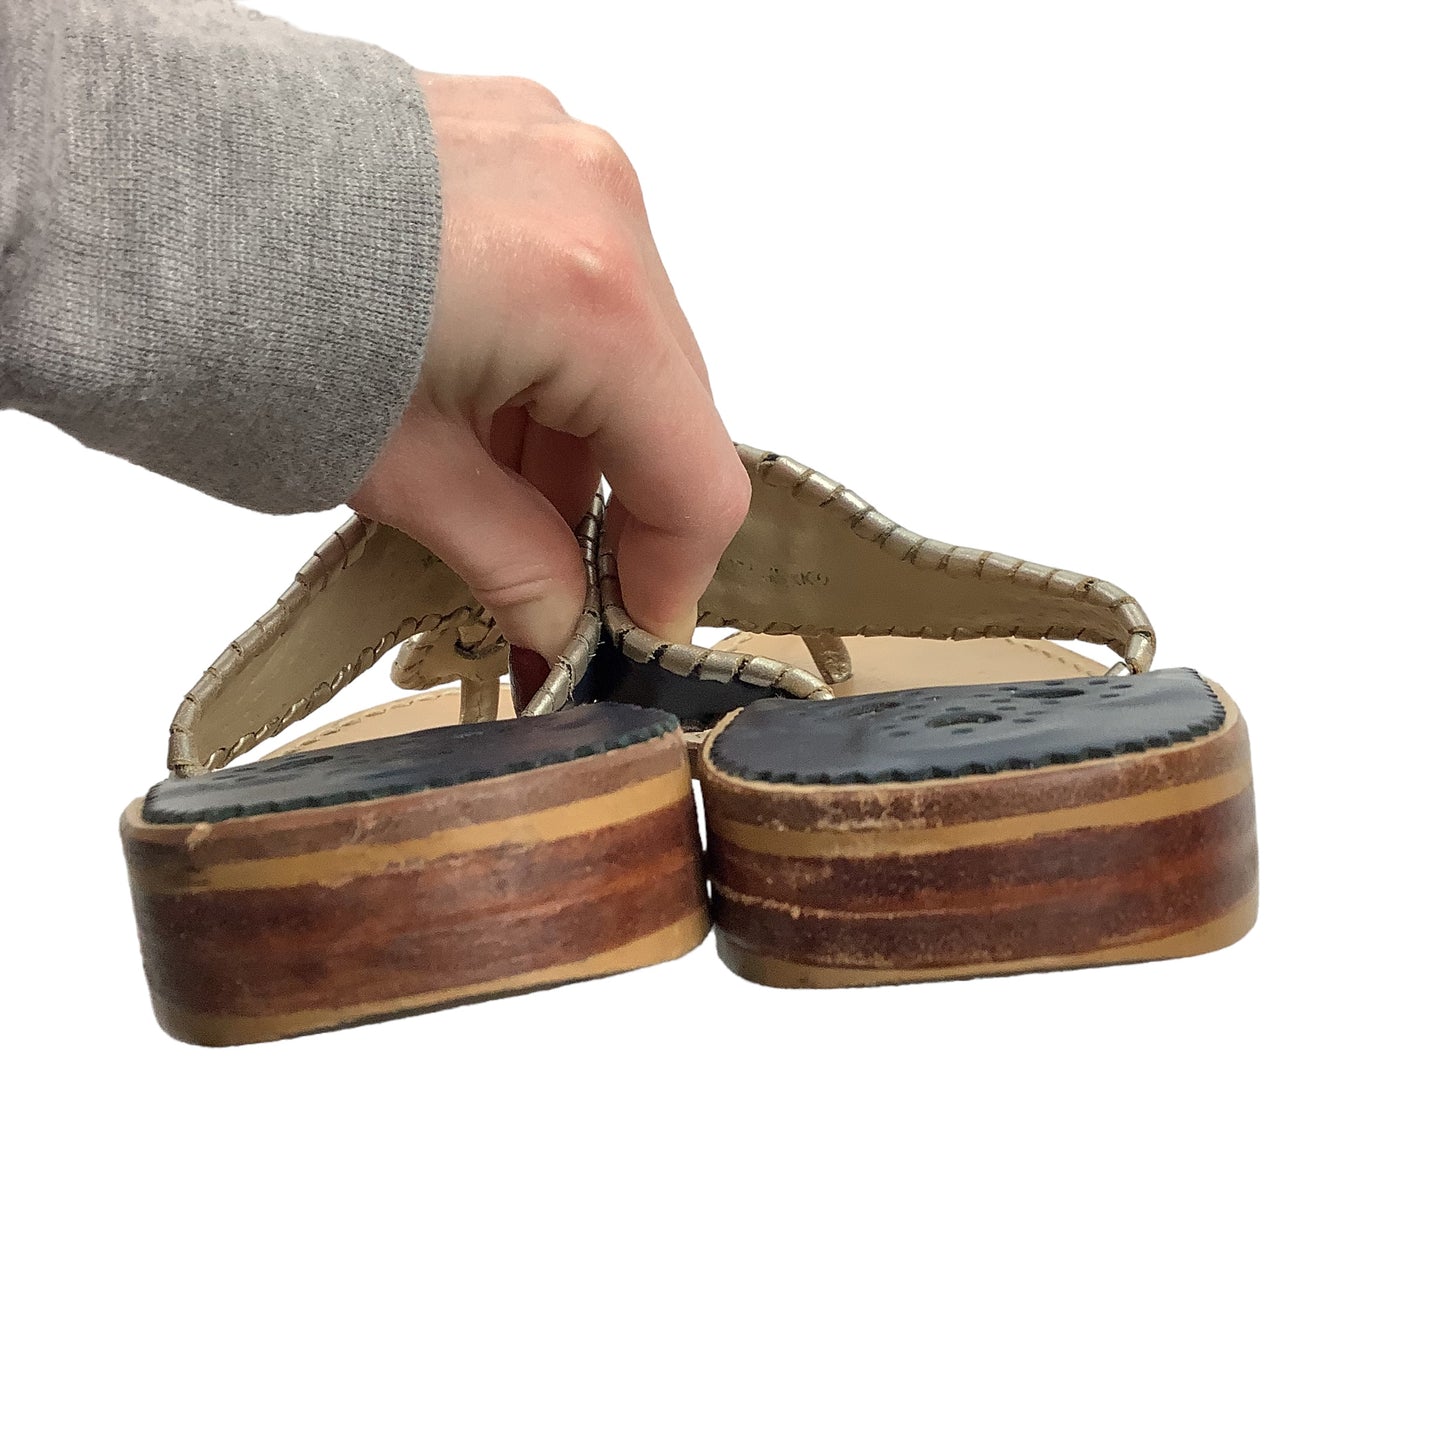 Sandals Designer By Jack Rogers  Size: 7